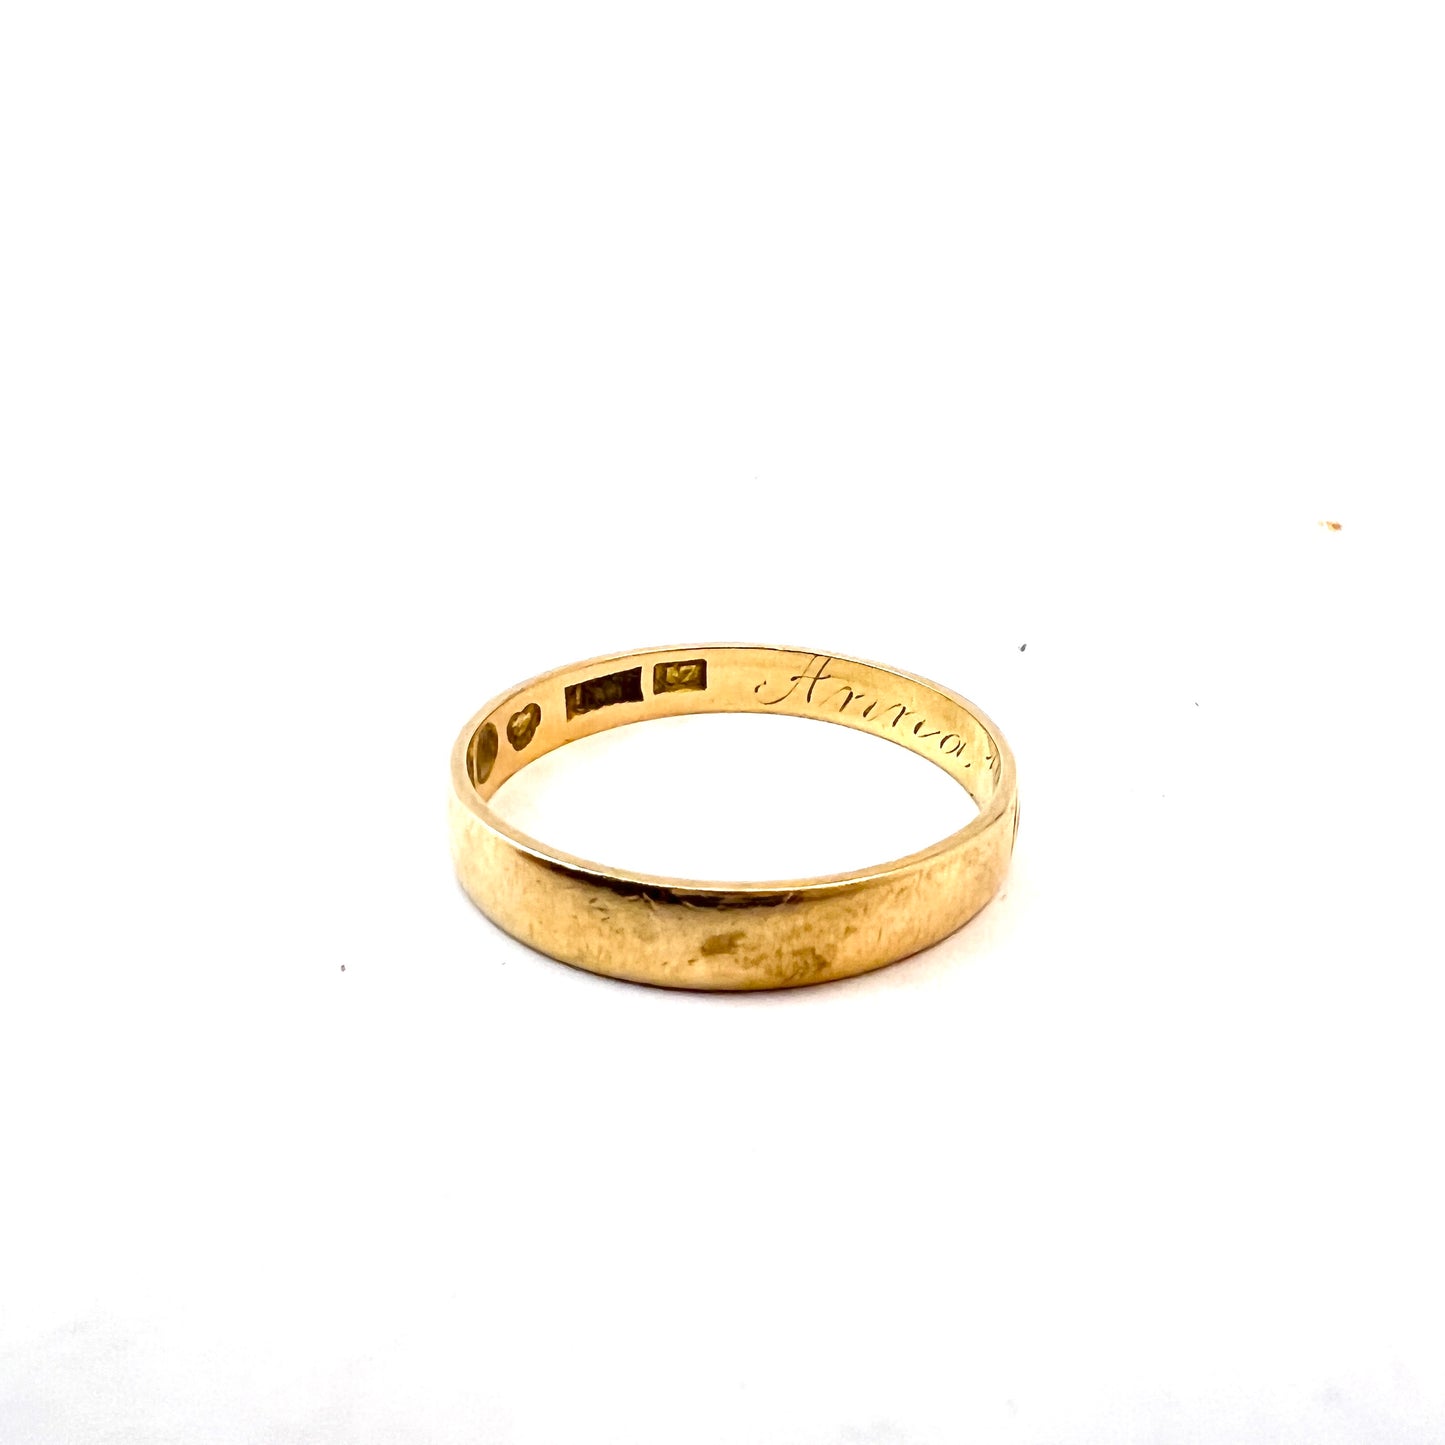 Nordström, Sweden 1911. Antique 18k Gold Wedding Band Ring.